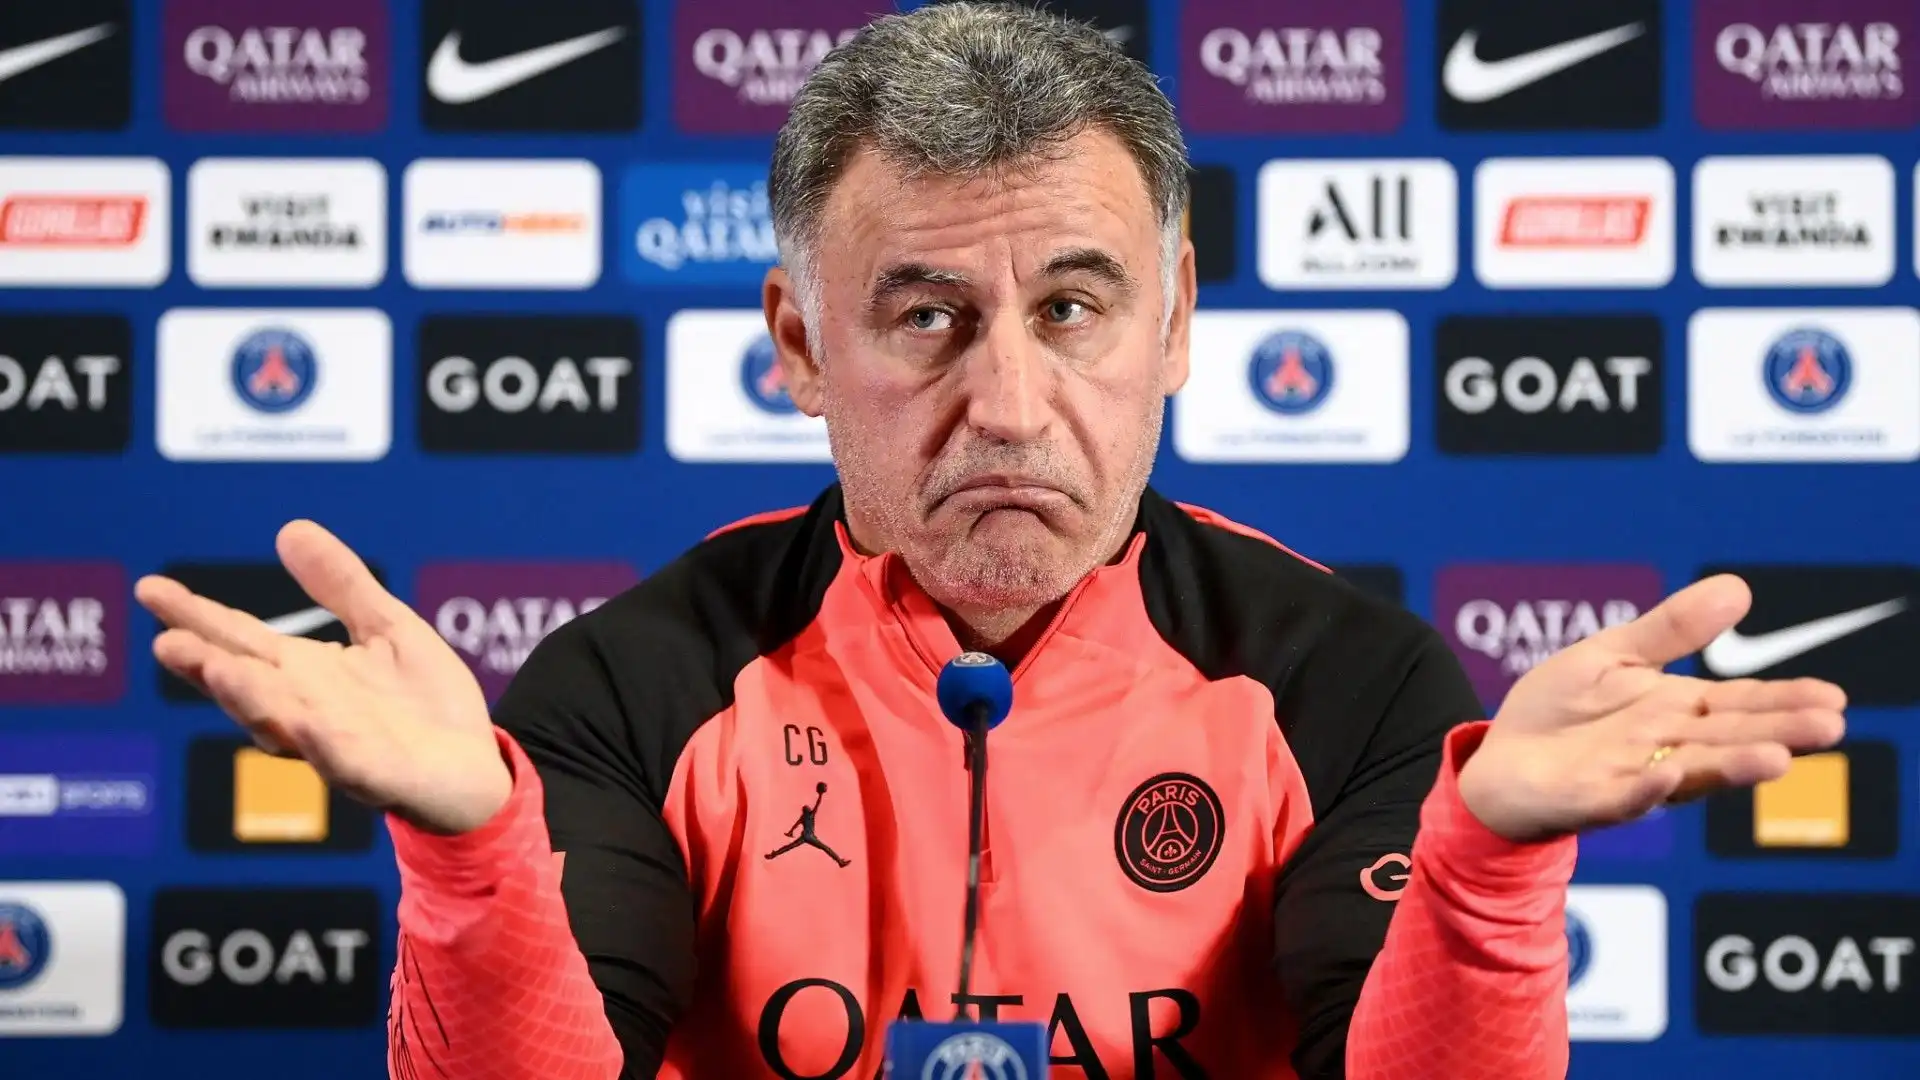 Nonostante la vittoria del campionato, la dirigenza del club francese non è pienamente soddisfatta